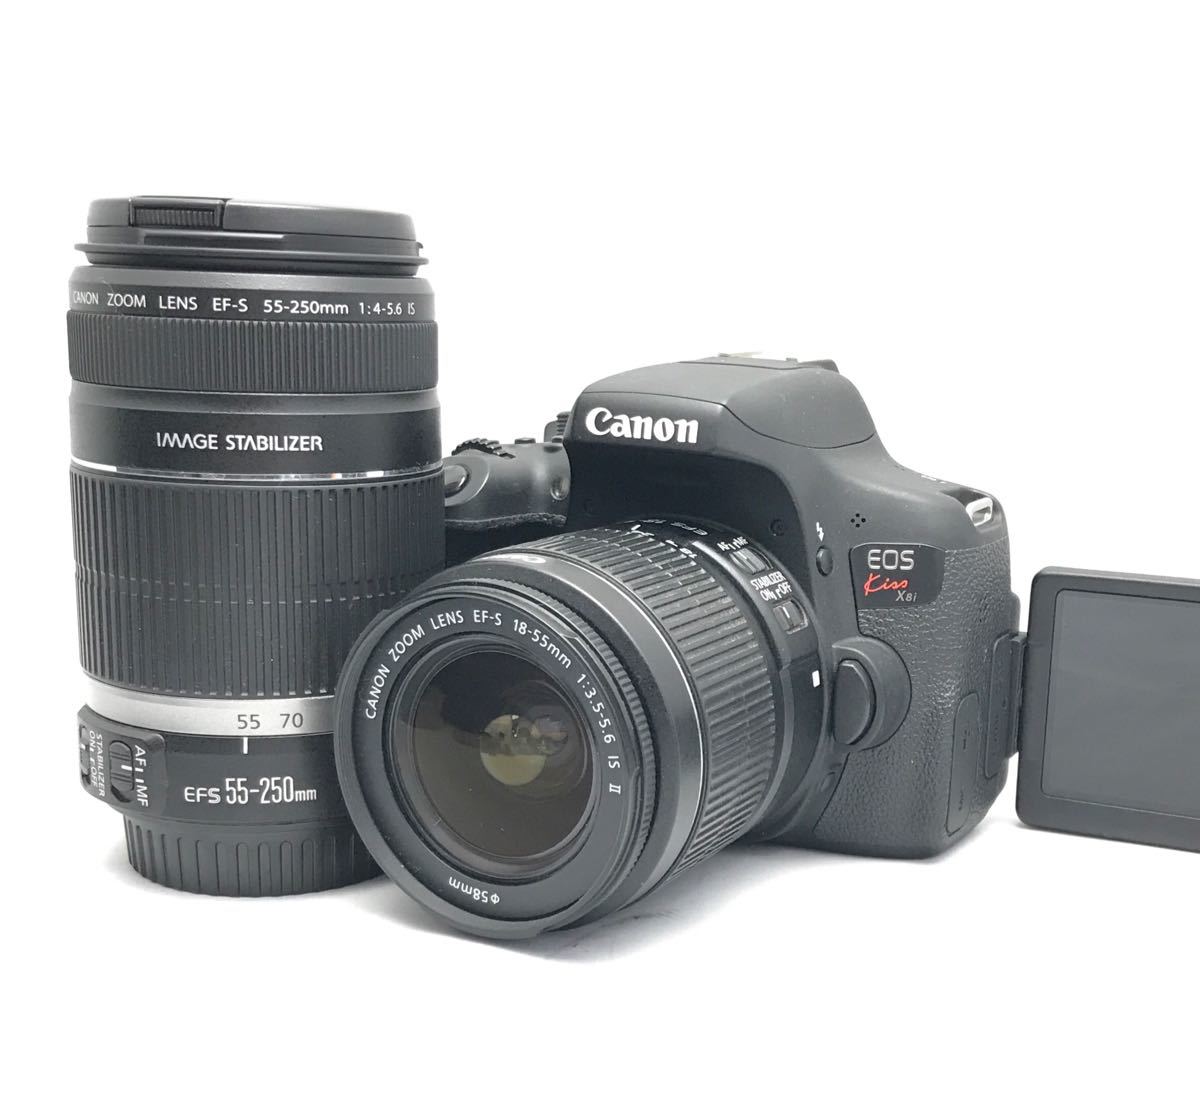 カメラ デジタルカメラ Canon EOS kiss x5 Wレンズ 即利用可能 安心フルセット 簡単にボかせる 